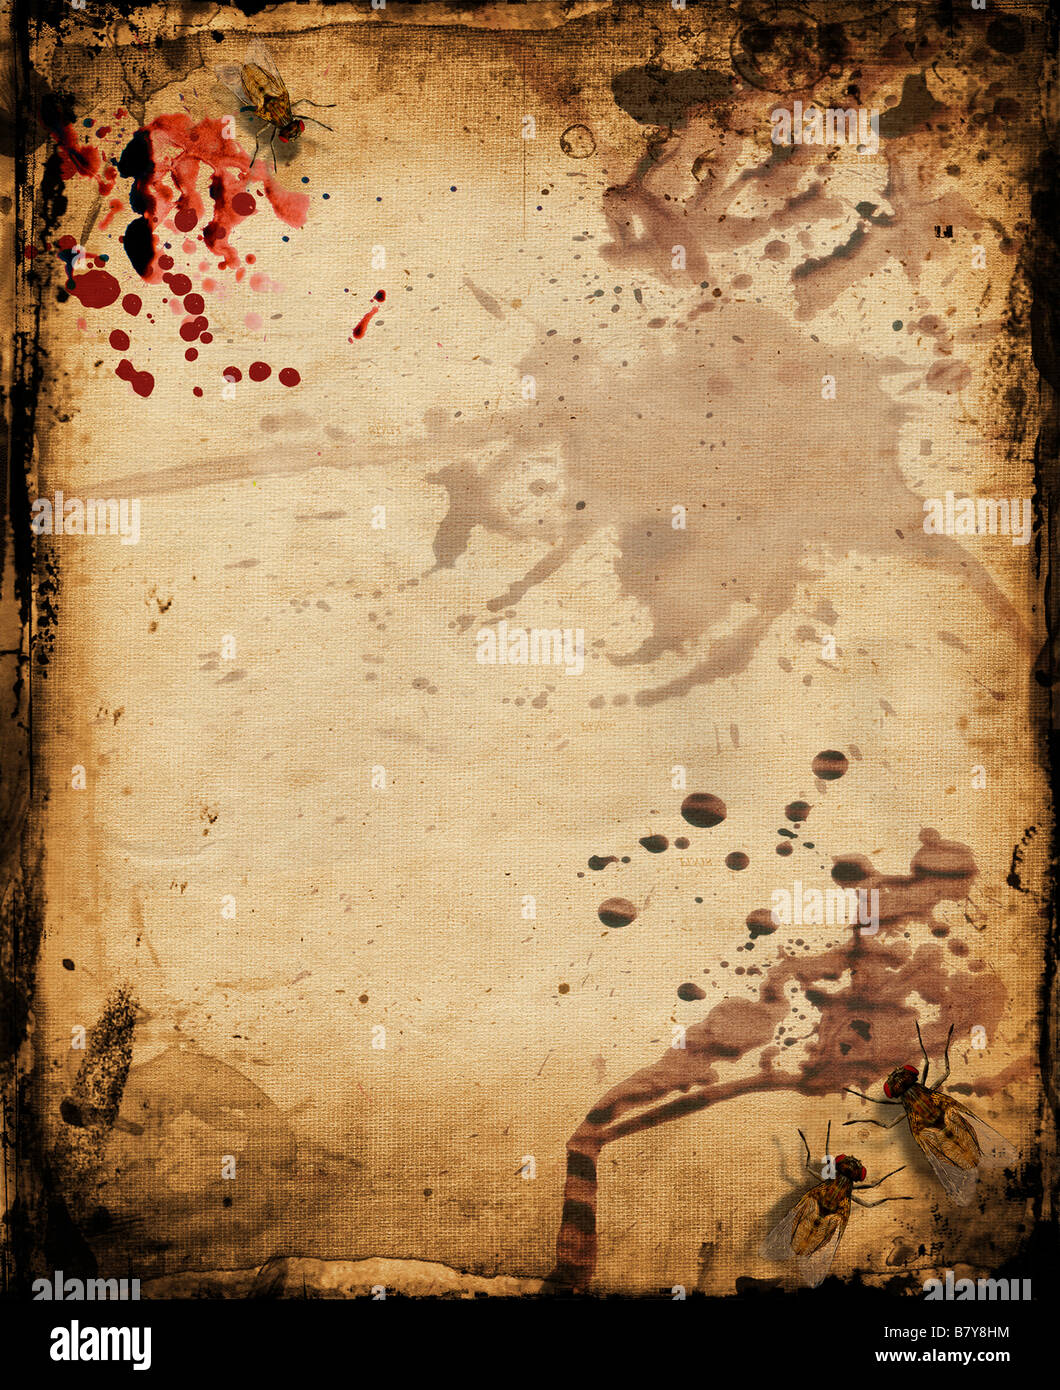 Grunge background avec des taches de sang et d'insectes Banque D'Images